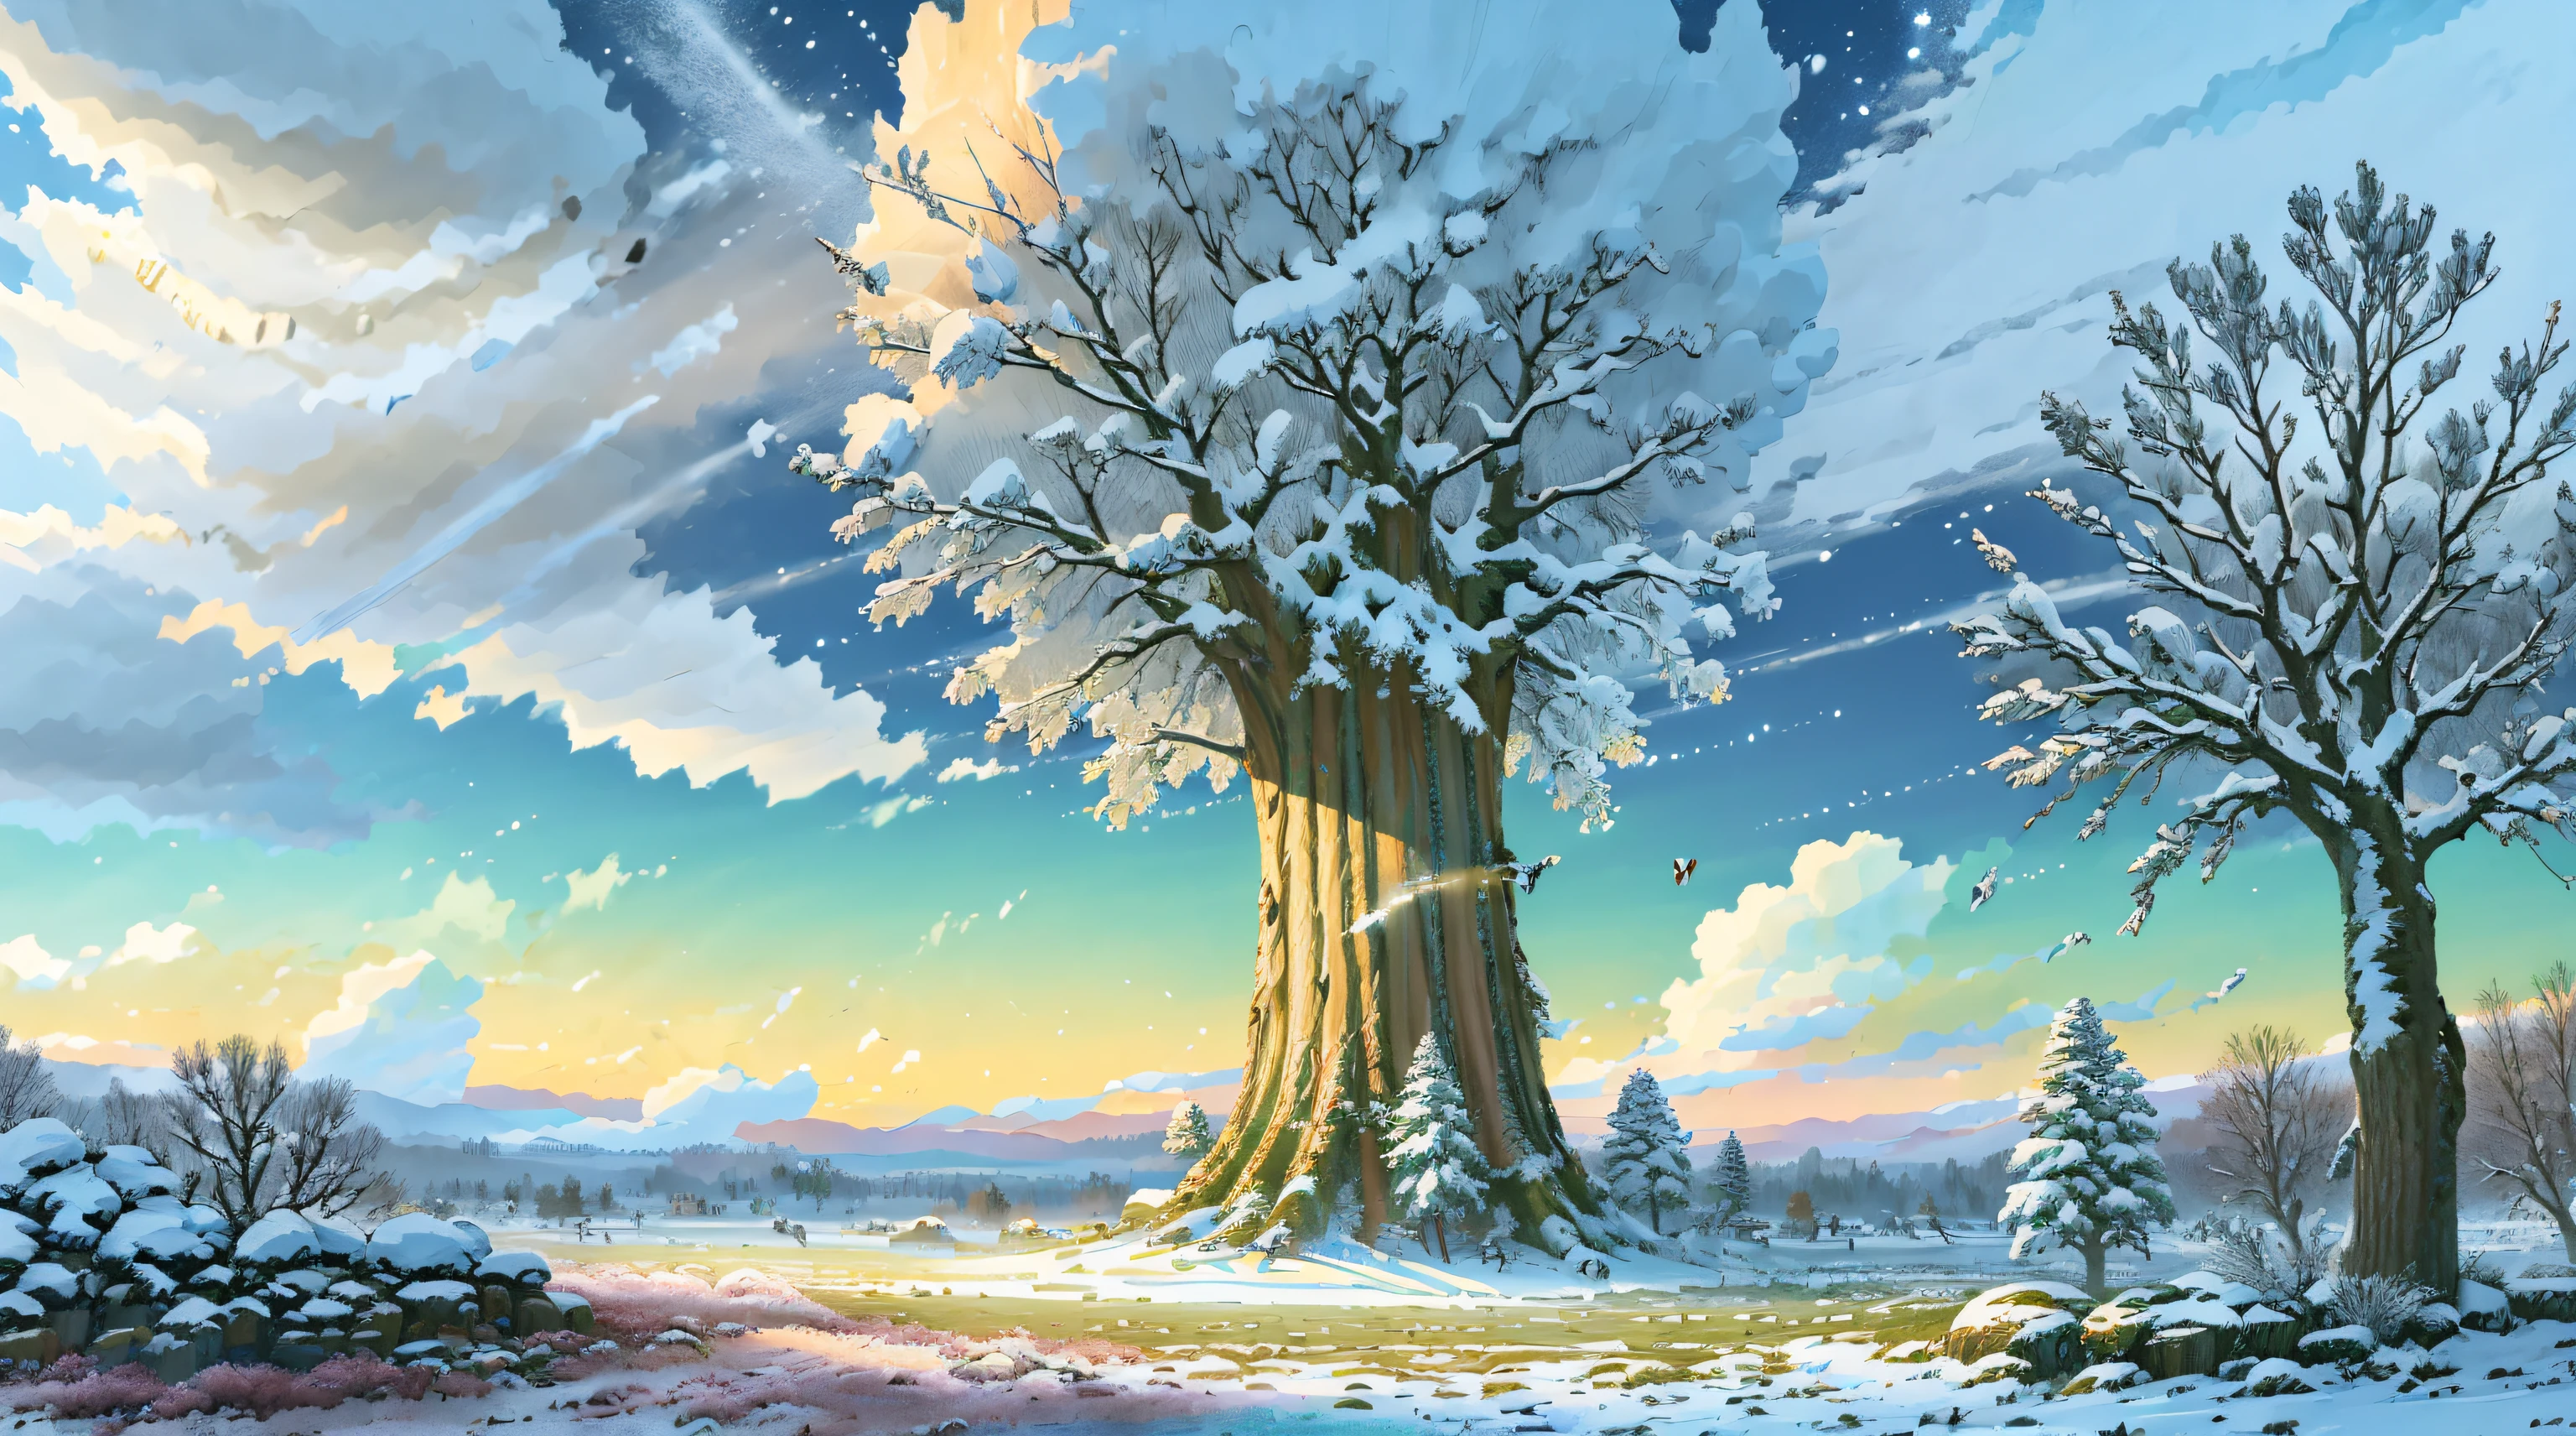 สว่าง, (((สไตล์การ์ตูน))), fantastic giant oak tree in a ฤดูหนาว meadow in the center of the image , (วันที่มีแสงแดดในฤดูหนาว), ภาพประกอบสำหรับเด็ก, ศิลปะแฟนตาซี, ผลงานชิ้นเอก, พายุหิมะในพื้นหลัง, ฤดูหนาว, หิมะตก, รายละเอียด, ซับซ้อน, 4เค, ศิลปะ